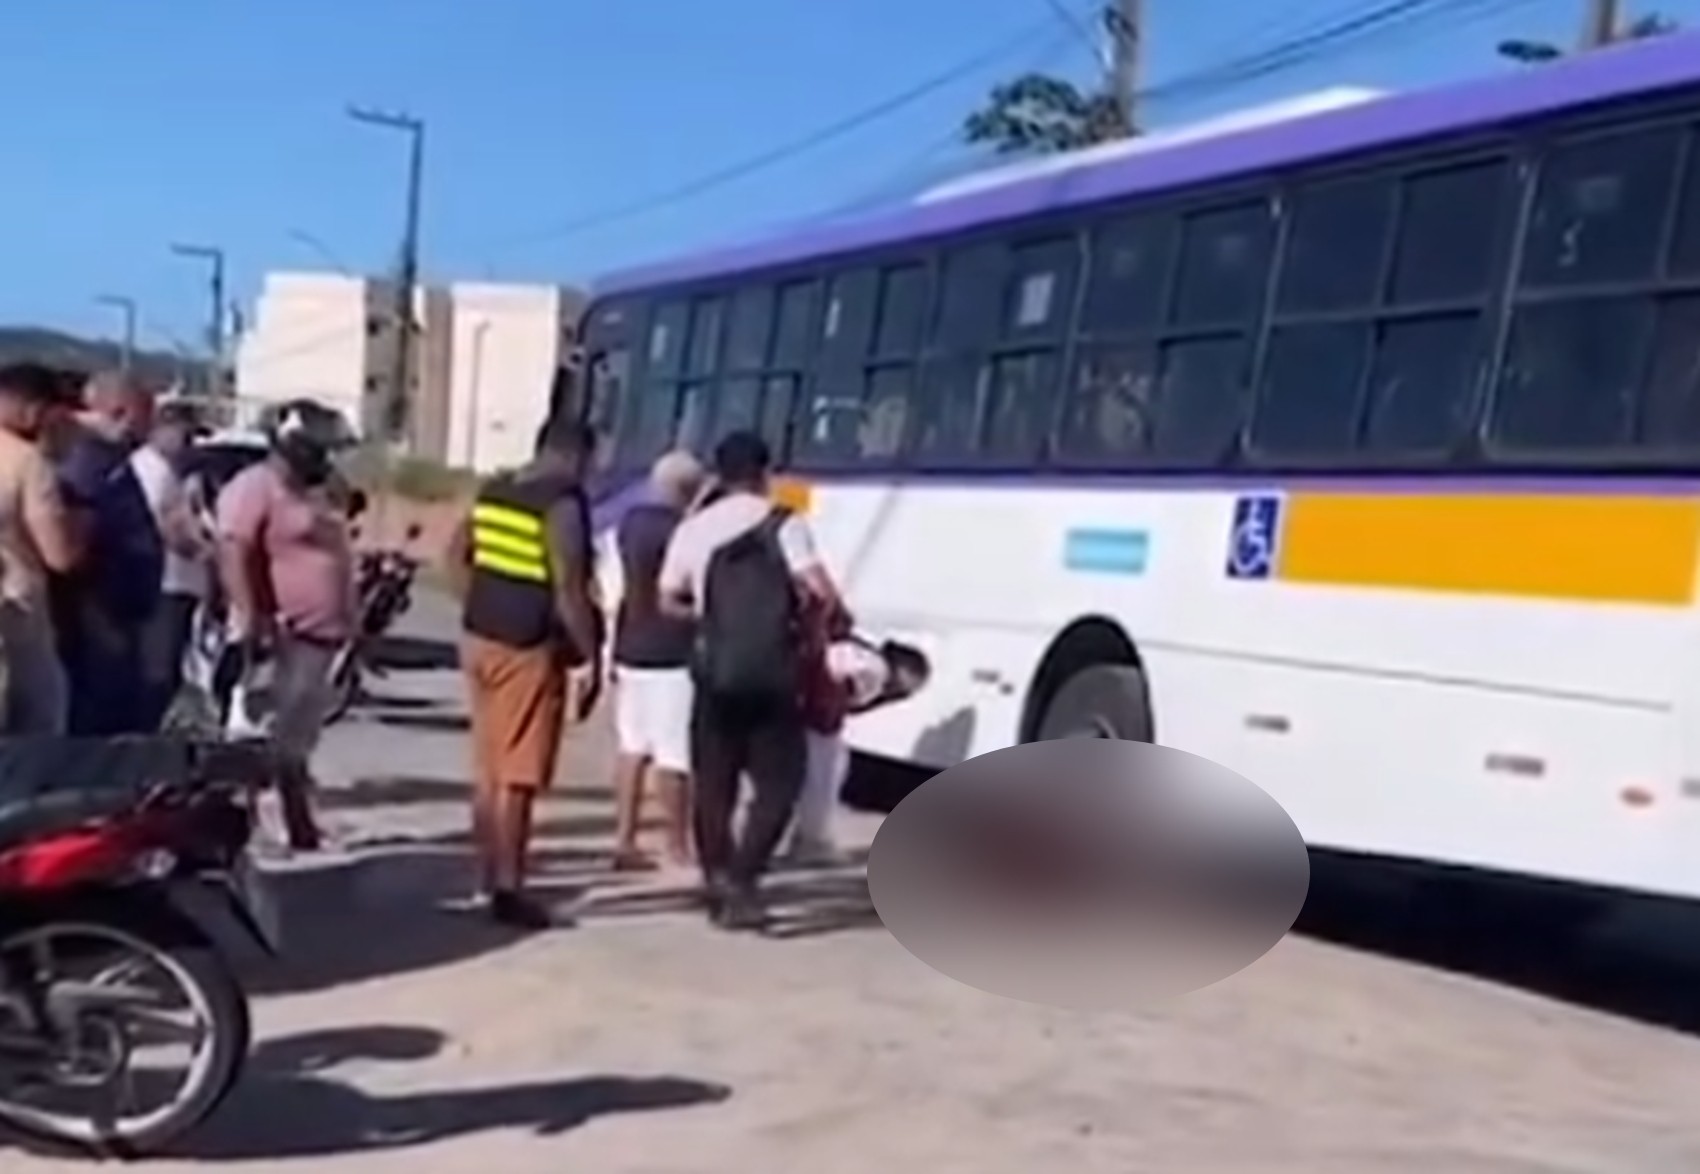 Menino morre após ser atropelado por ônibus em São Lourenço da Mata